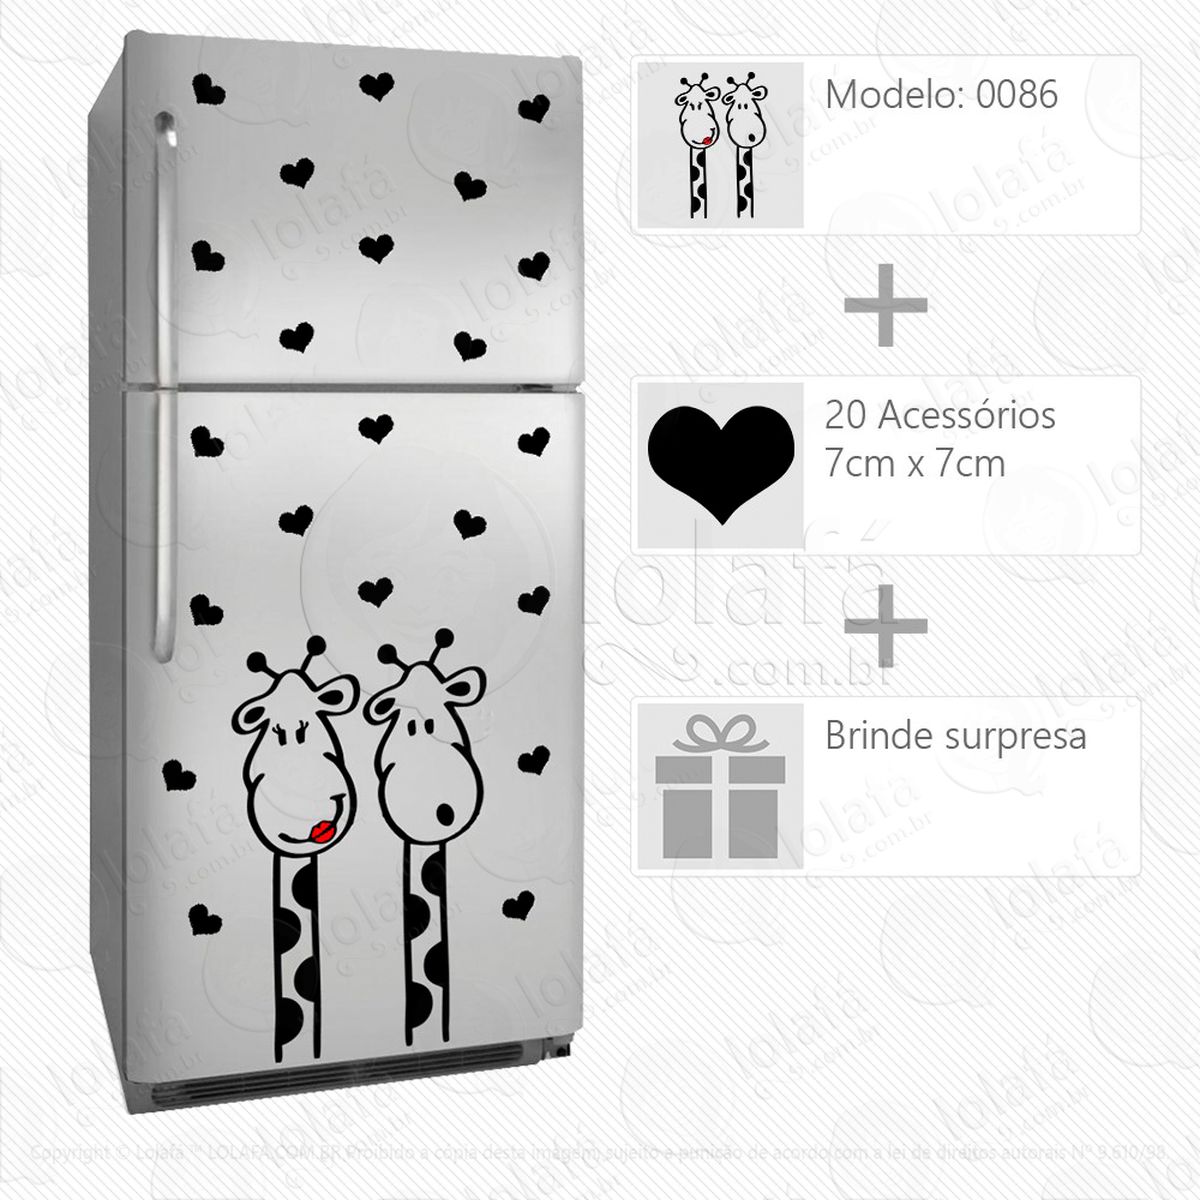 girafas adesivo para geladeira e frigobar - mod:86